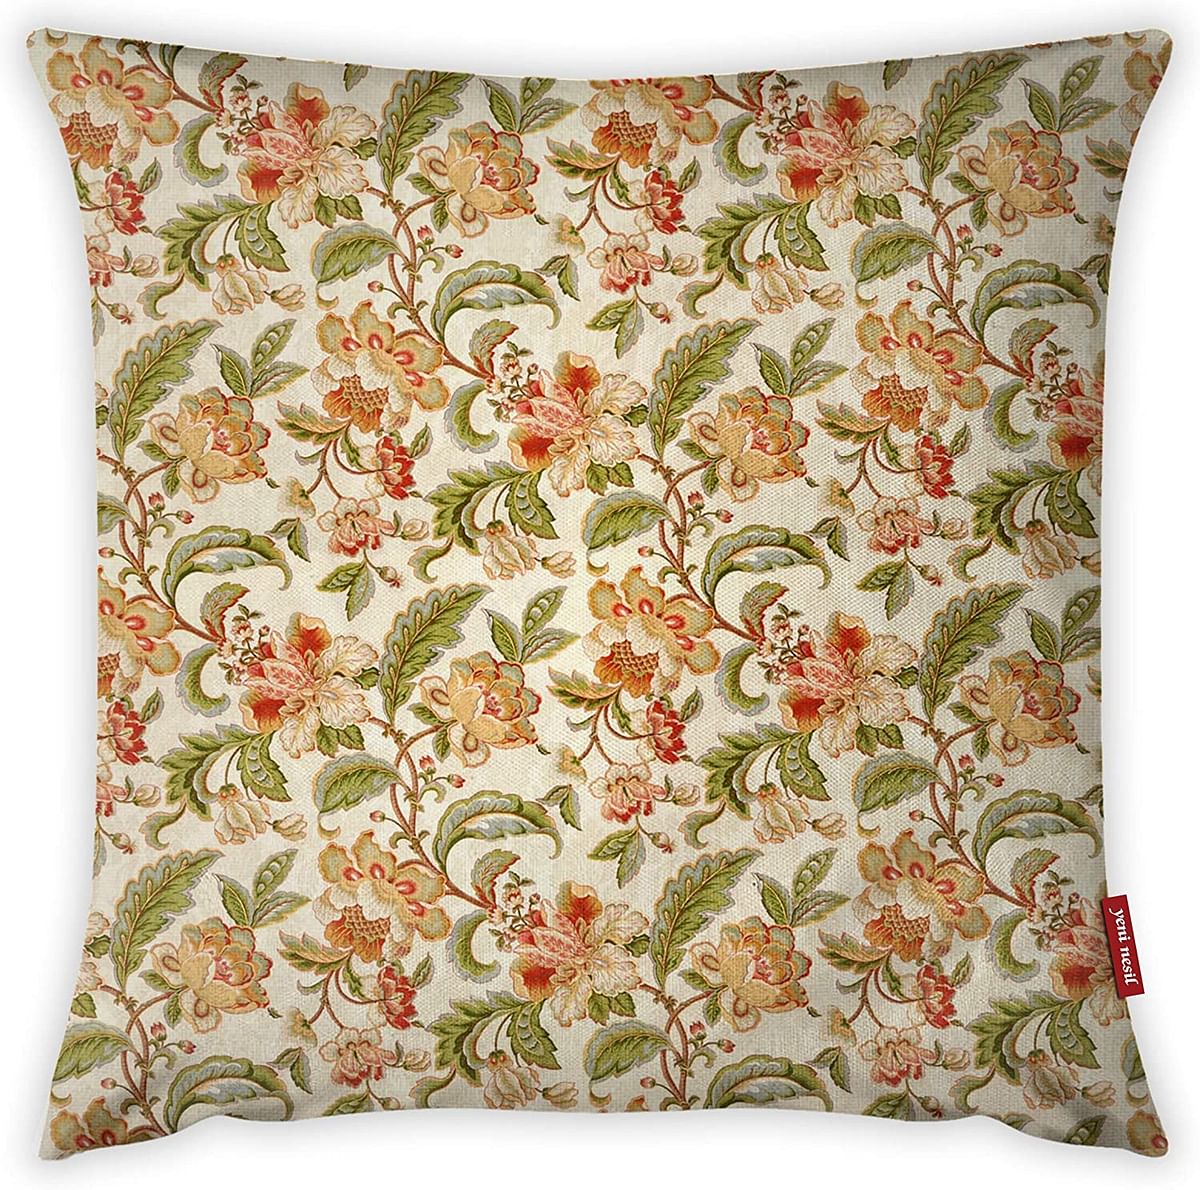 Mon Desire Decorative Throw Pillow Cover, Multi-Colour, 44 x 44 cm, Mdsyst3045